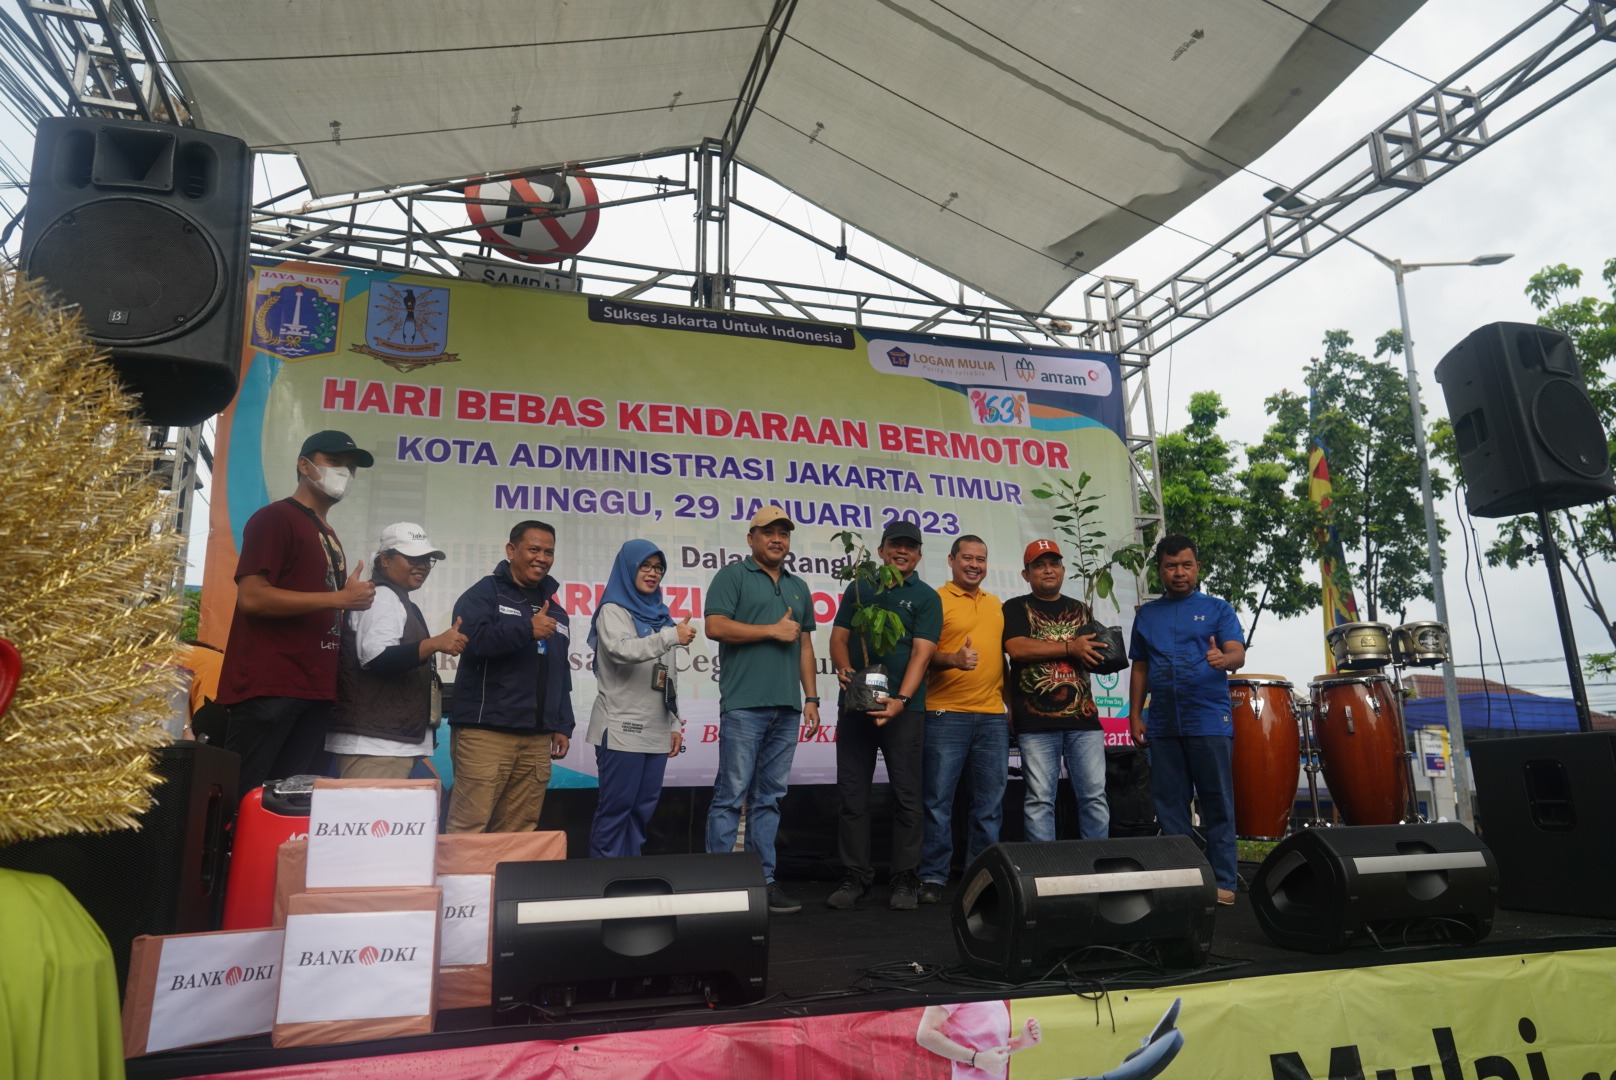 ANTAM UBPP Logam Mulia Terima Dua Penghargaan dari Walikota Jakarta Timur